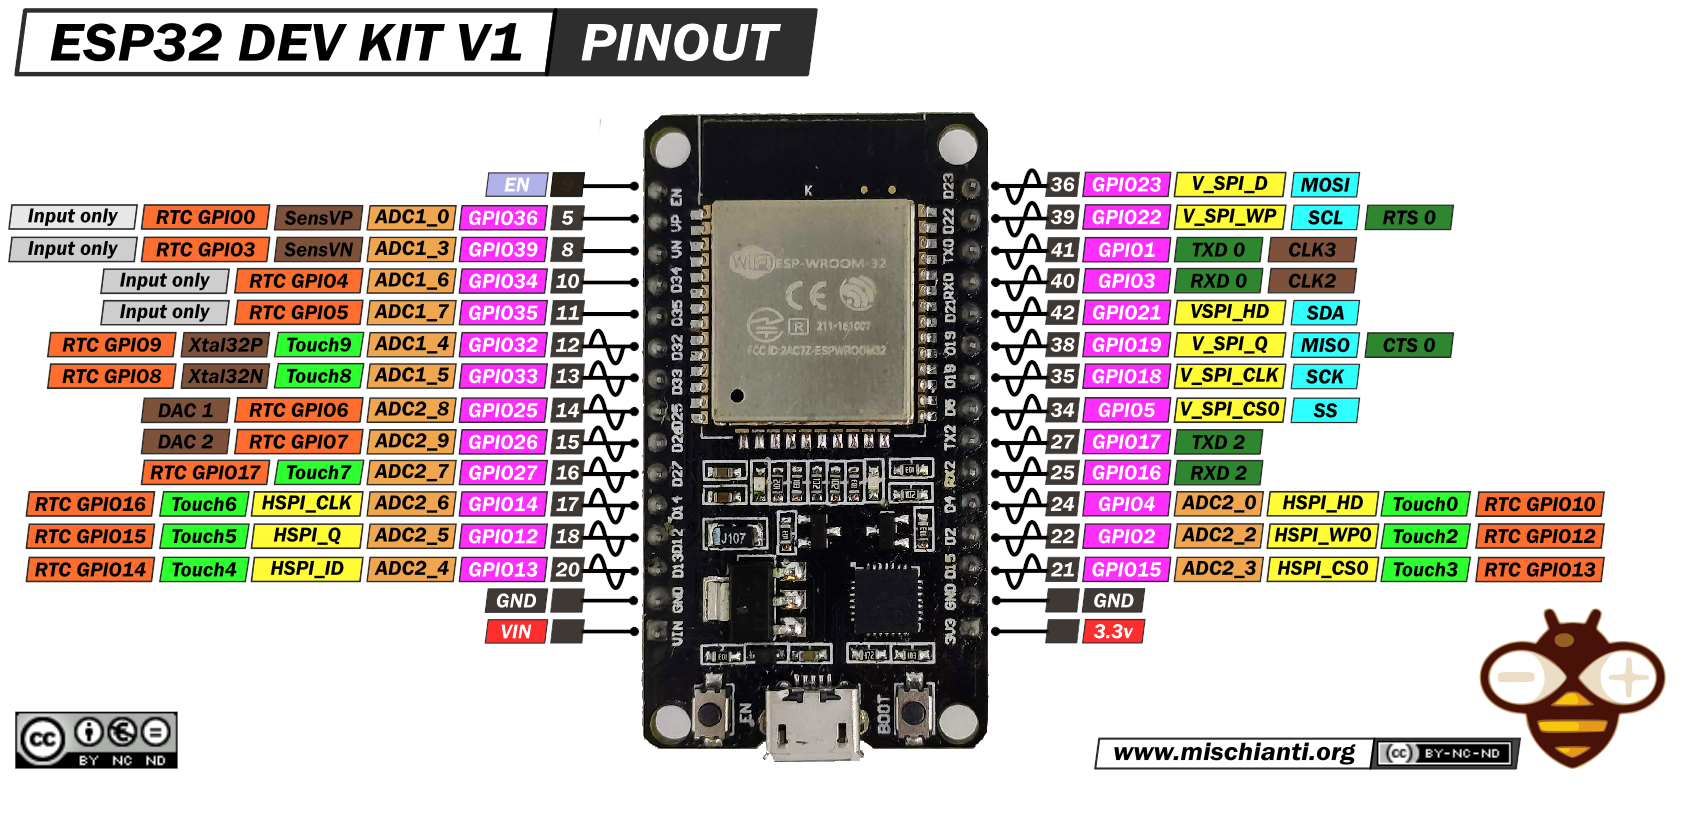 Figura 9 - PINOUT del modulo di sviluppo ESP32 Dev Kit V1 30 pin